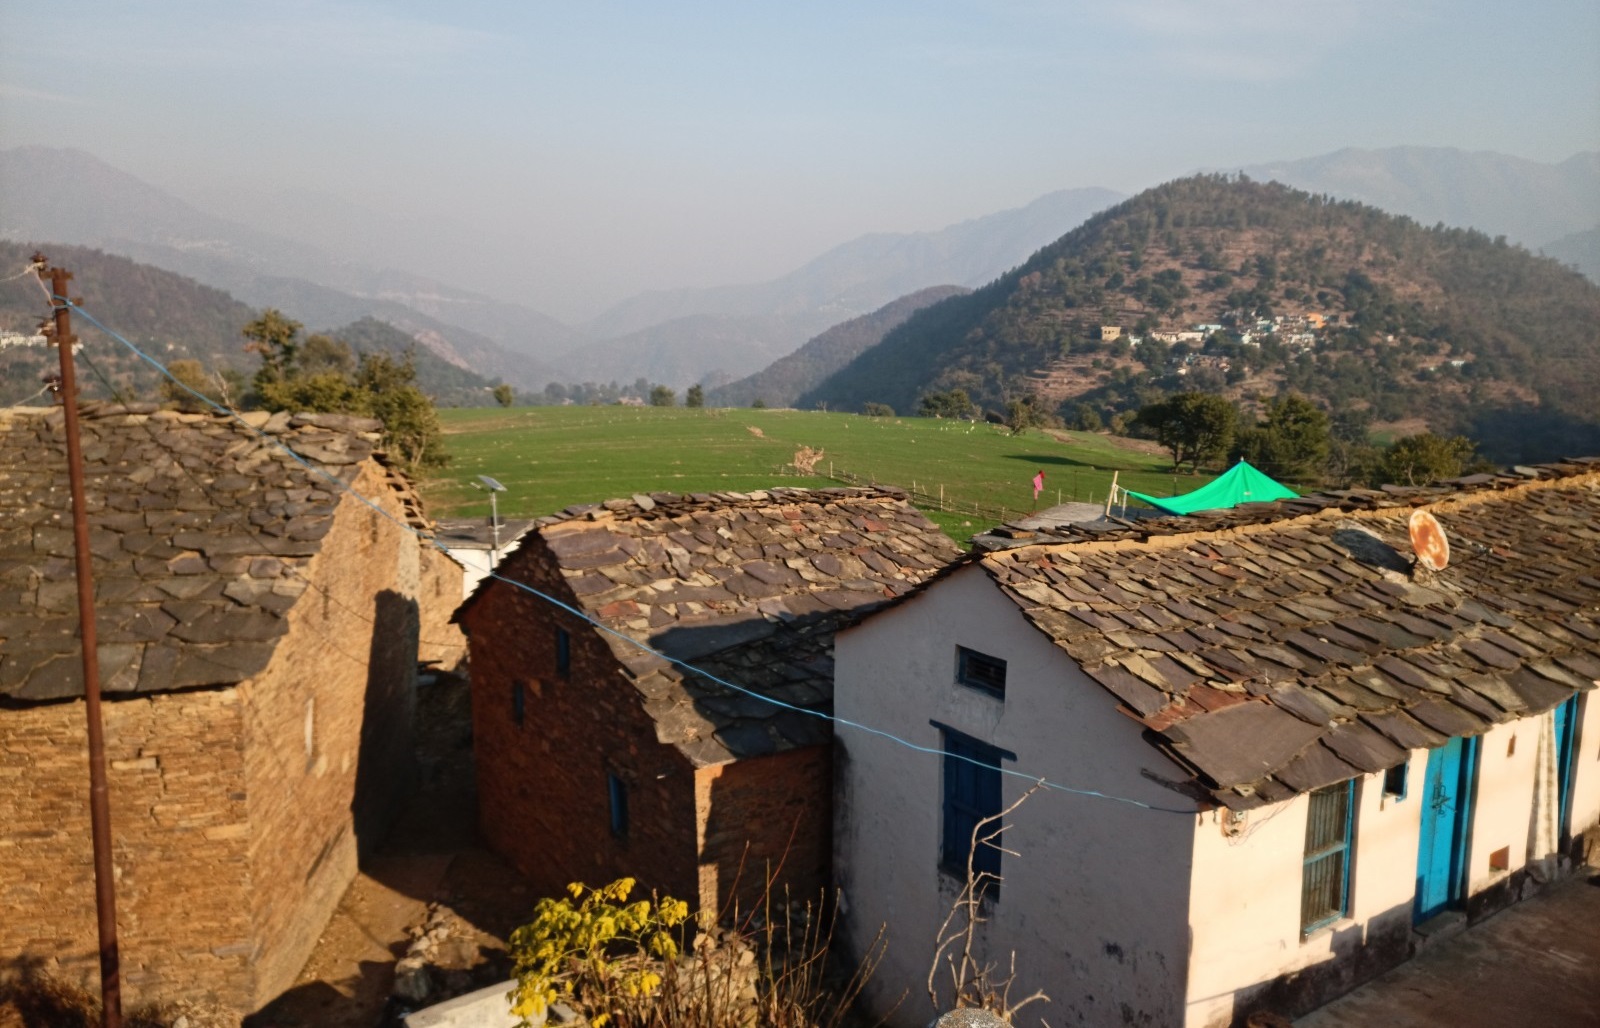 Kuthar village, Pauri Garhwal